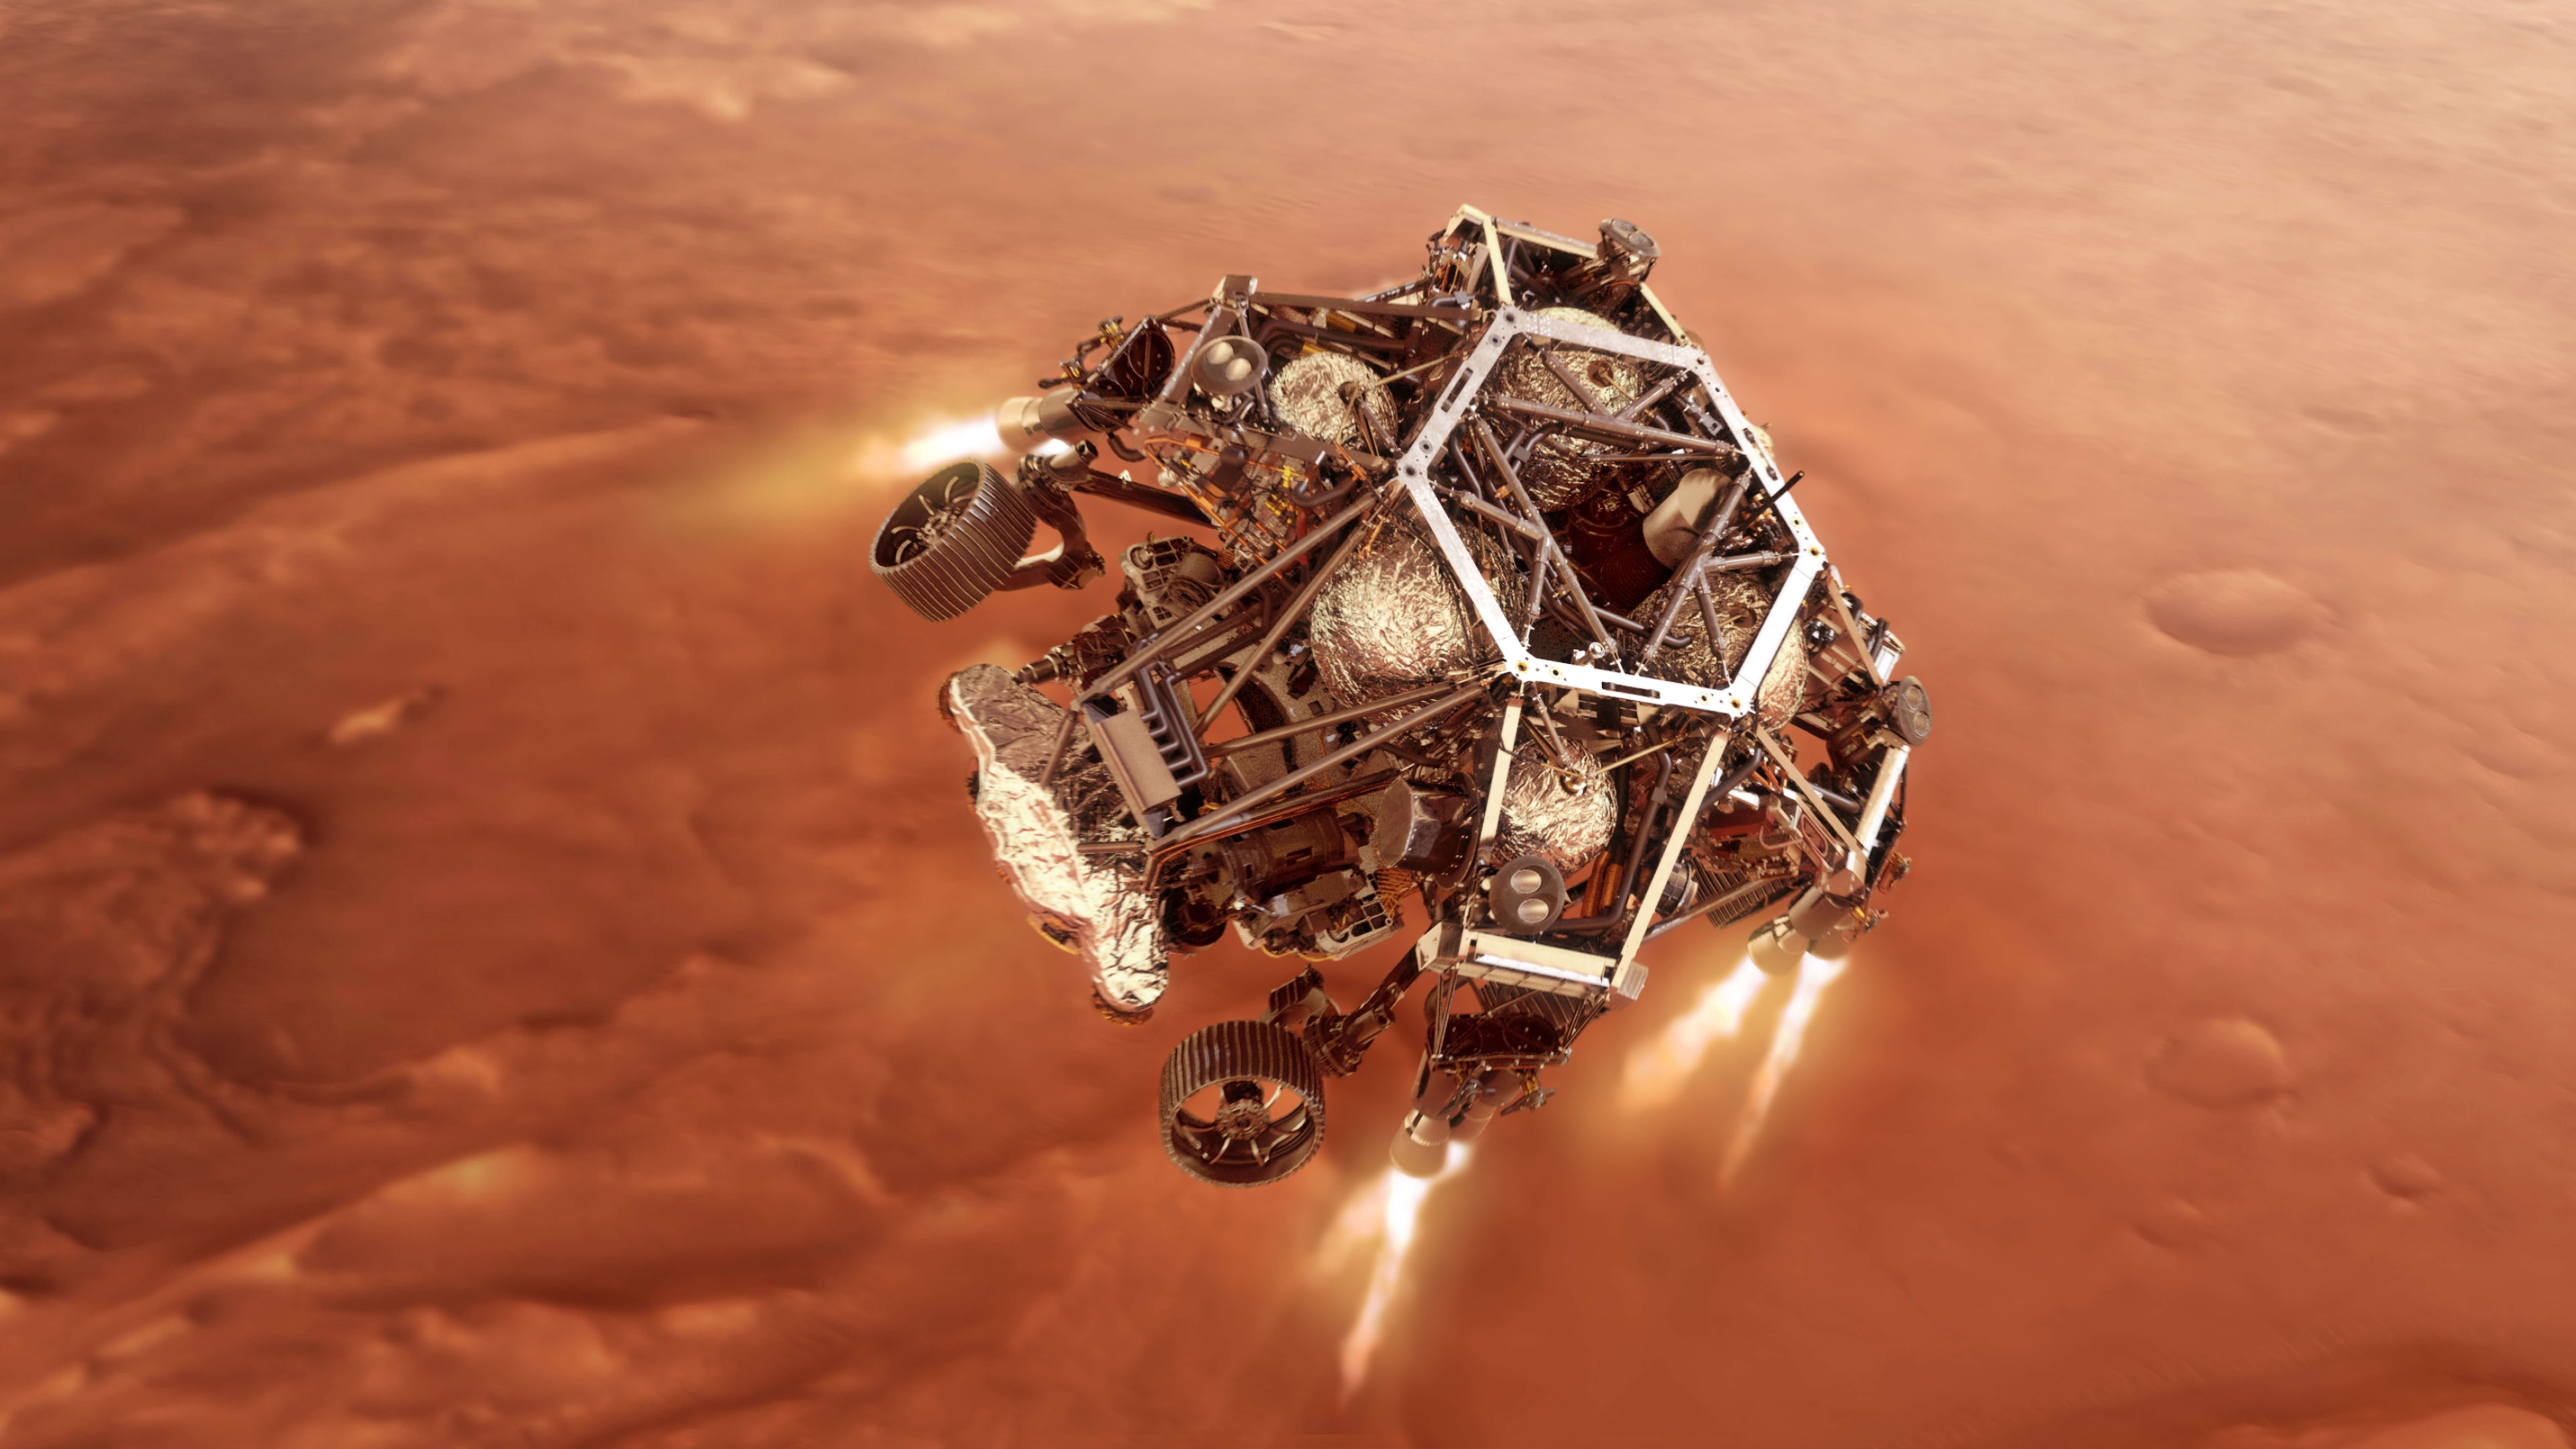 NASA's Perseverance rover